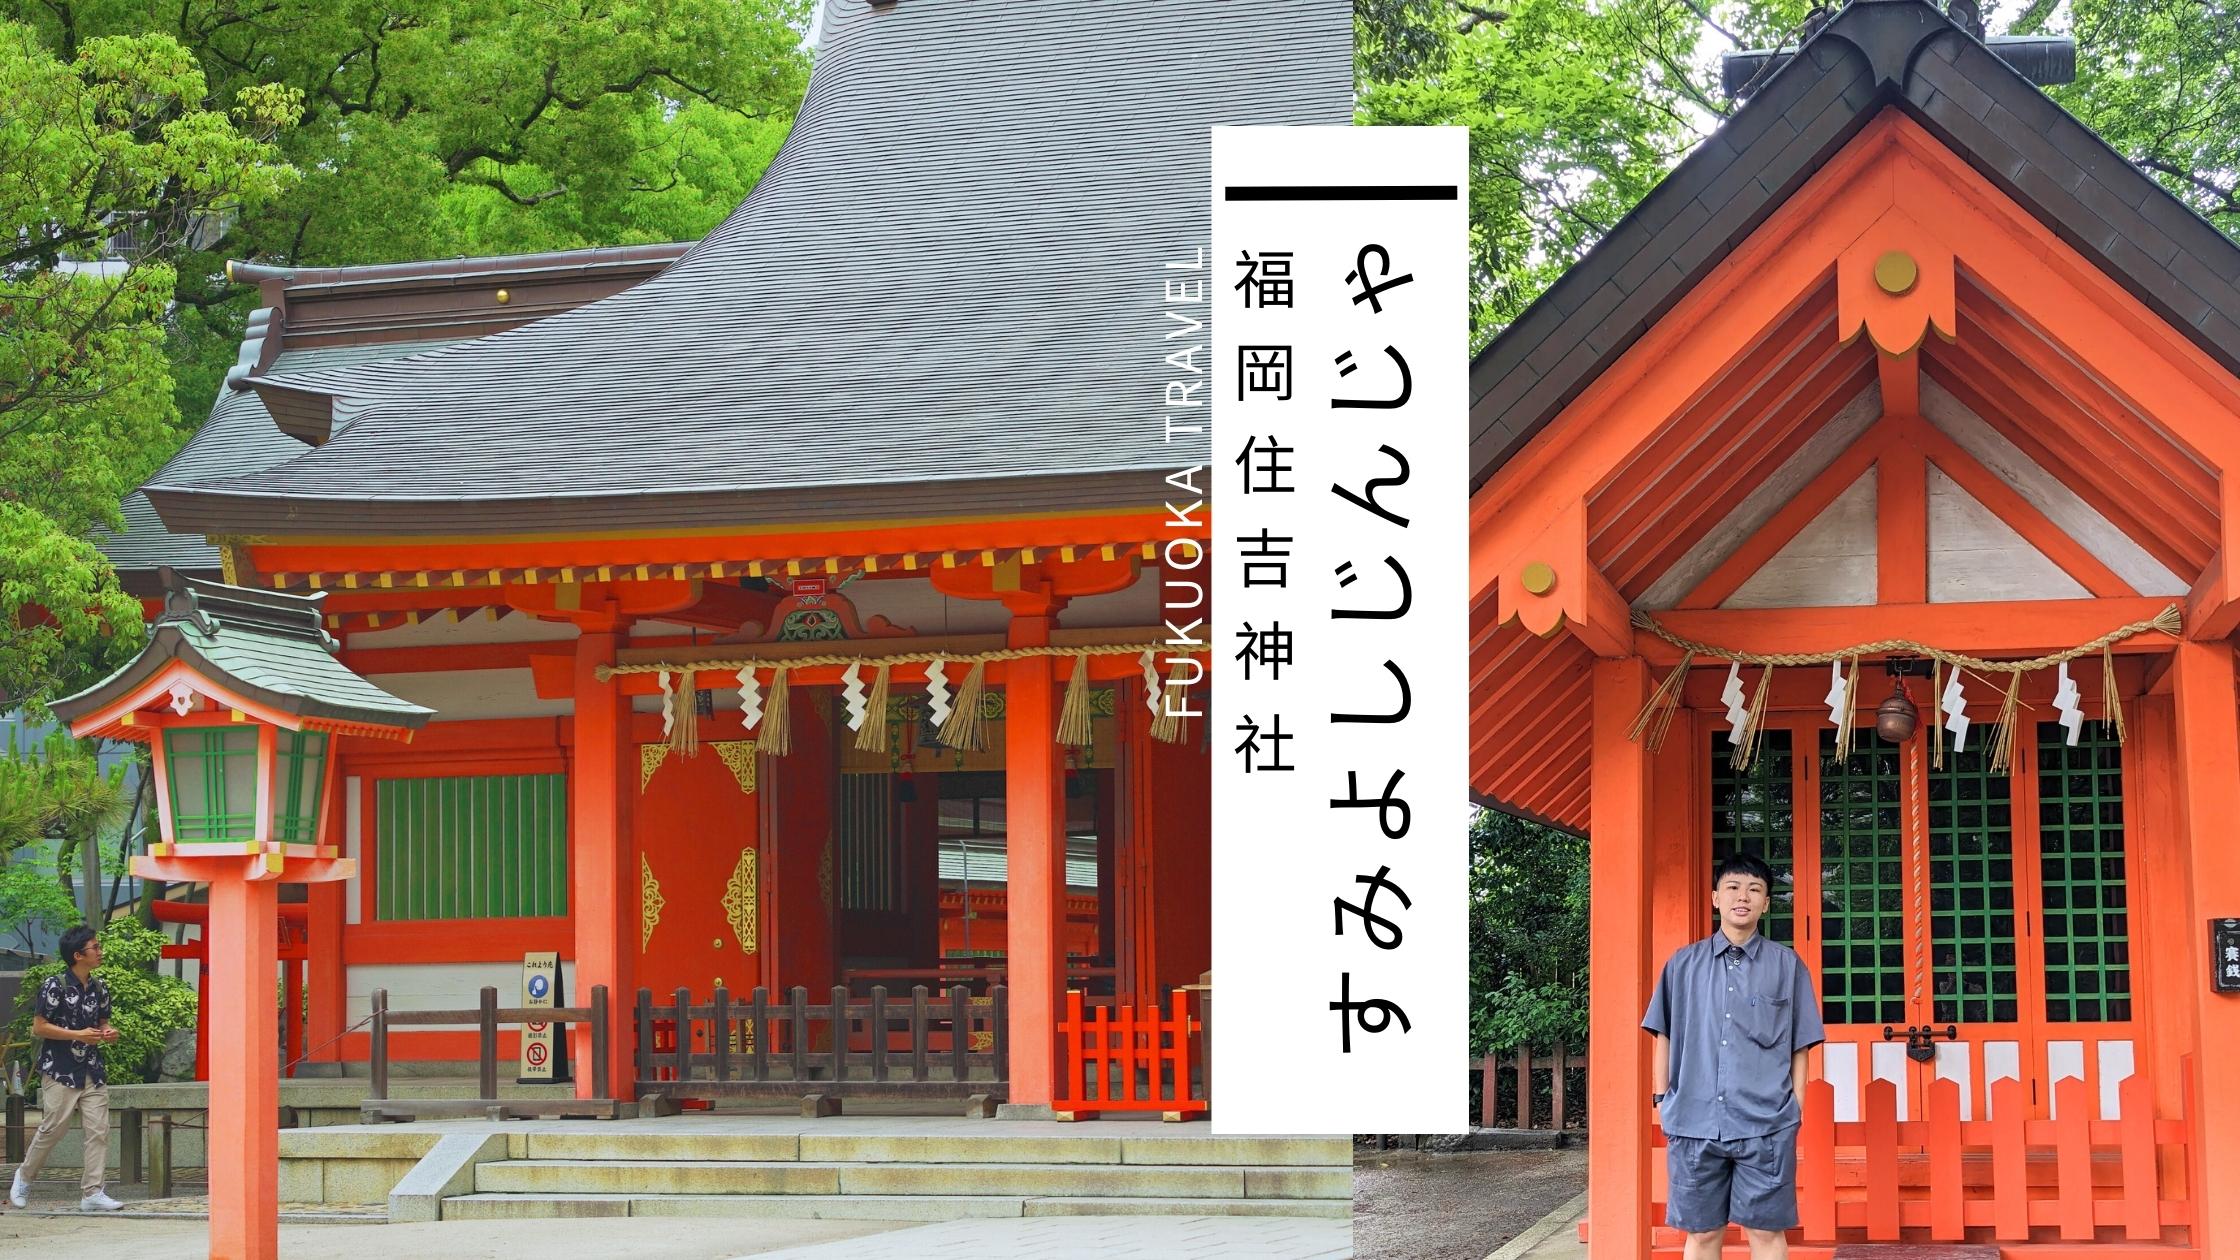 探訪福岡住吉神社－抽一支下半年的財運簽吧 福岡旅遊景點介紹 (1)